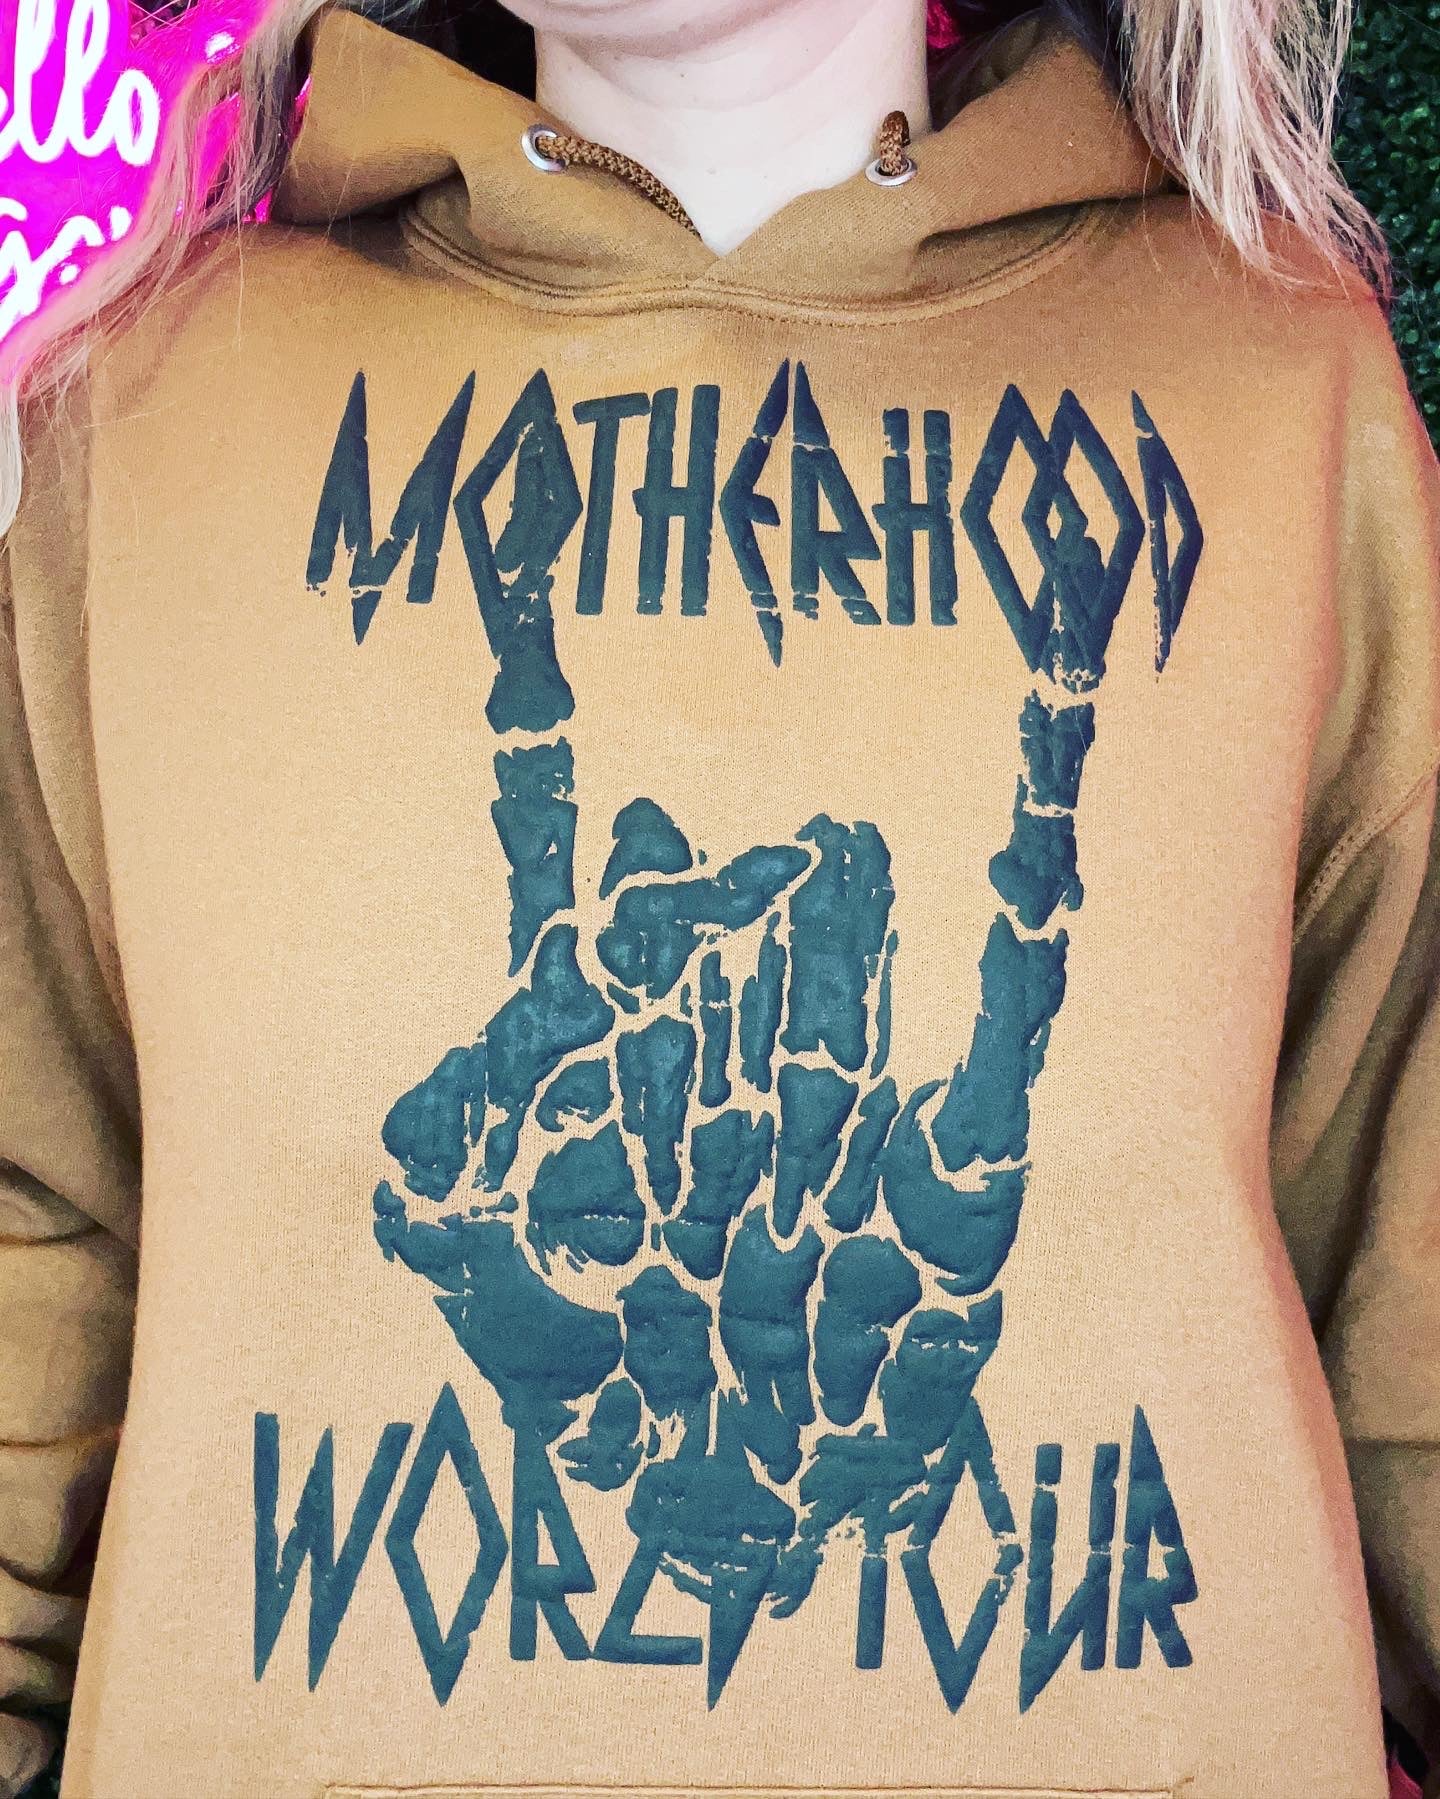 Motherhood World Tour hooded sweatshirt